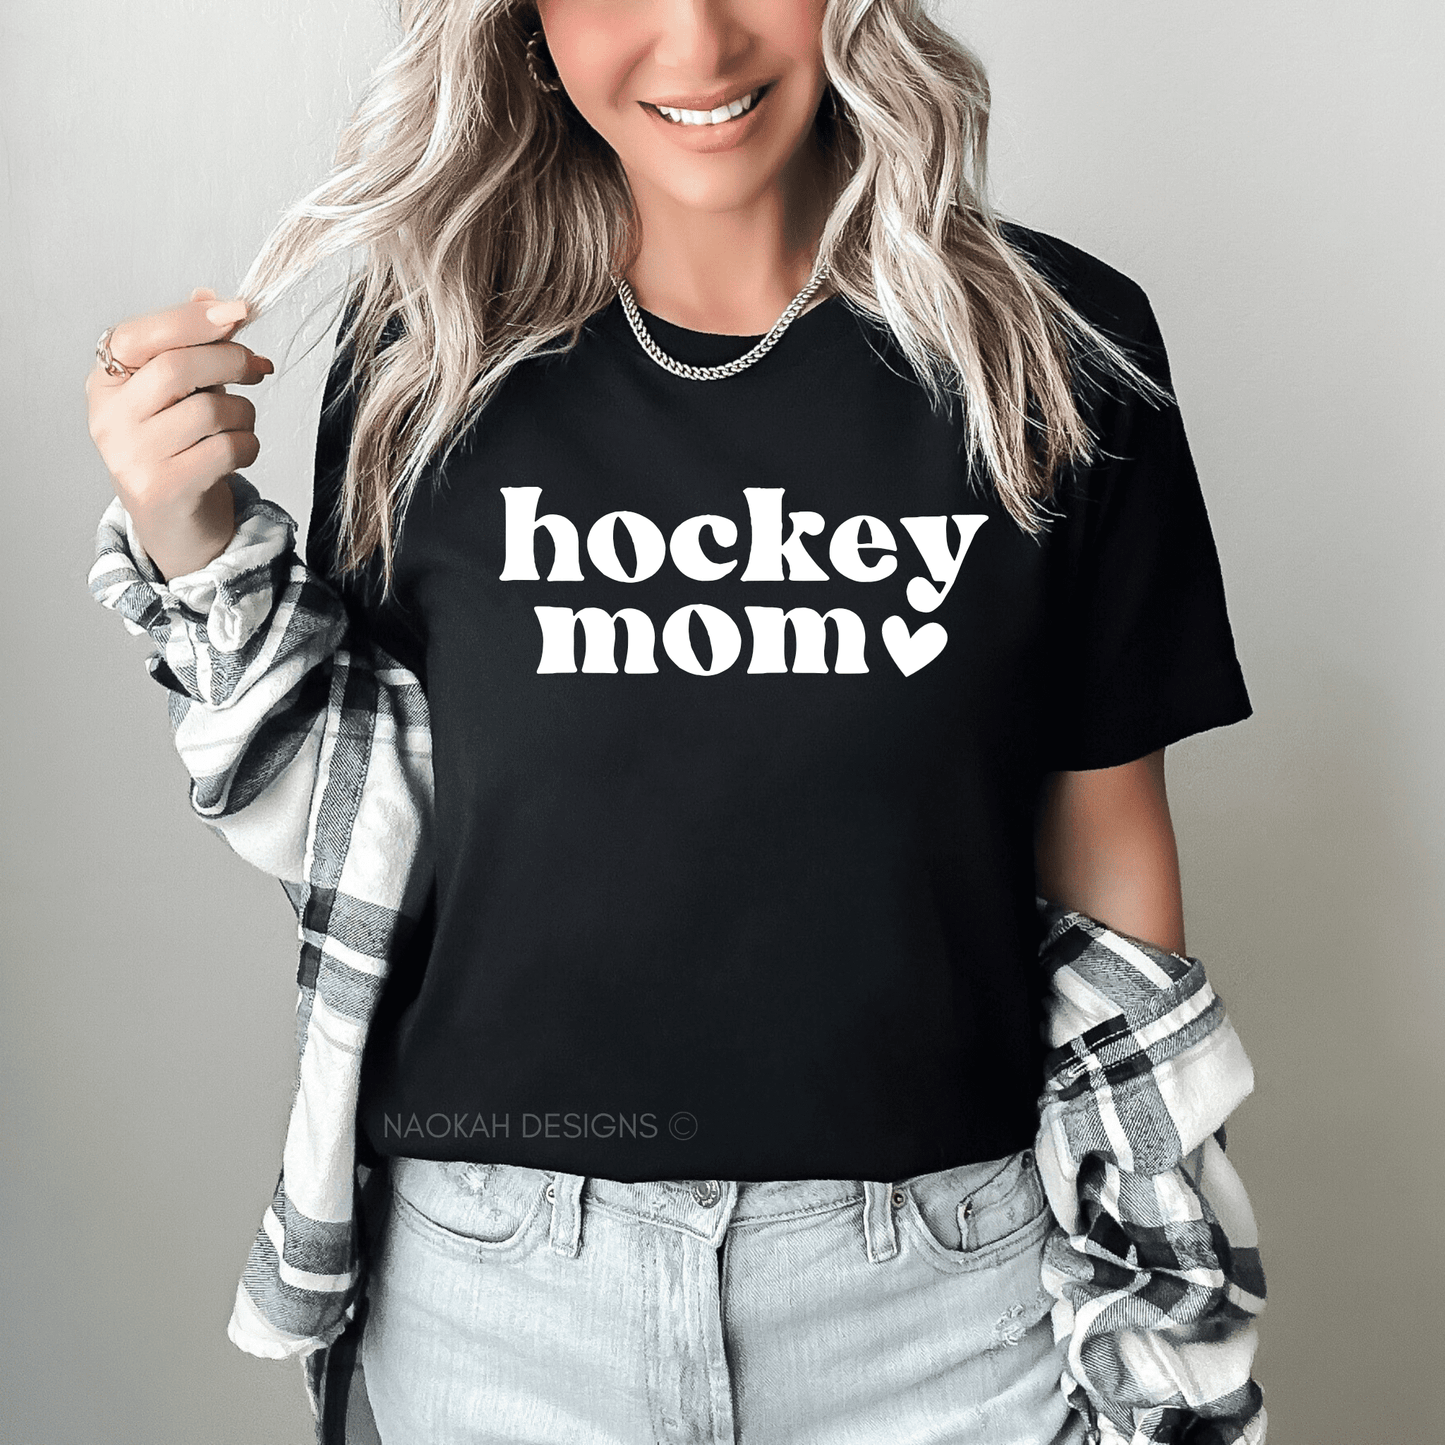 hockey mom tshirt, livin that hockey mom life shirt, hockey life shirt, hockey mom gear, hockey gifts for mom, hockey support shirt, hockey gift, unisex shirt